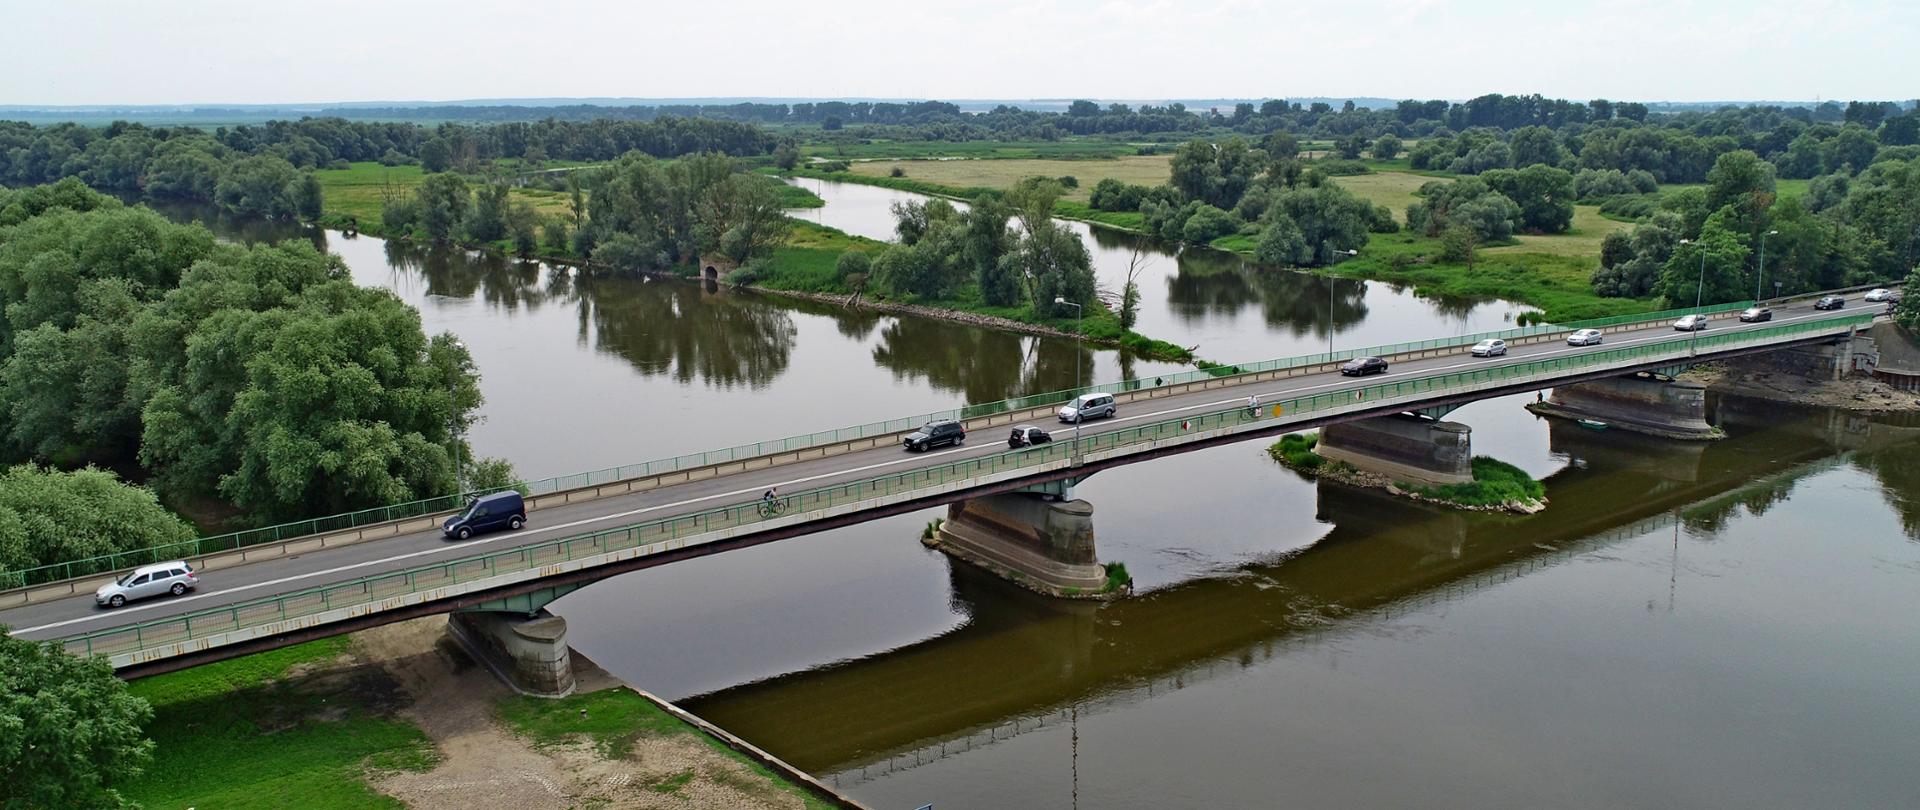 Na zdjęciu widać rzekę i biegnący nad nią most, po którym jadą samochody. W górnej części zdjęcia, za mostem, rzeka rozwidla się w dwóch kierunkach. Całość otoczona zielenią.